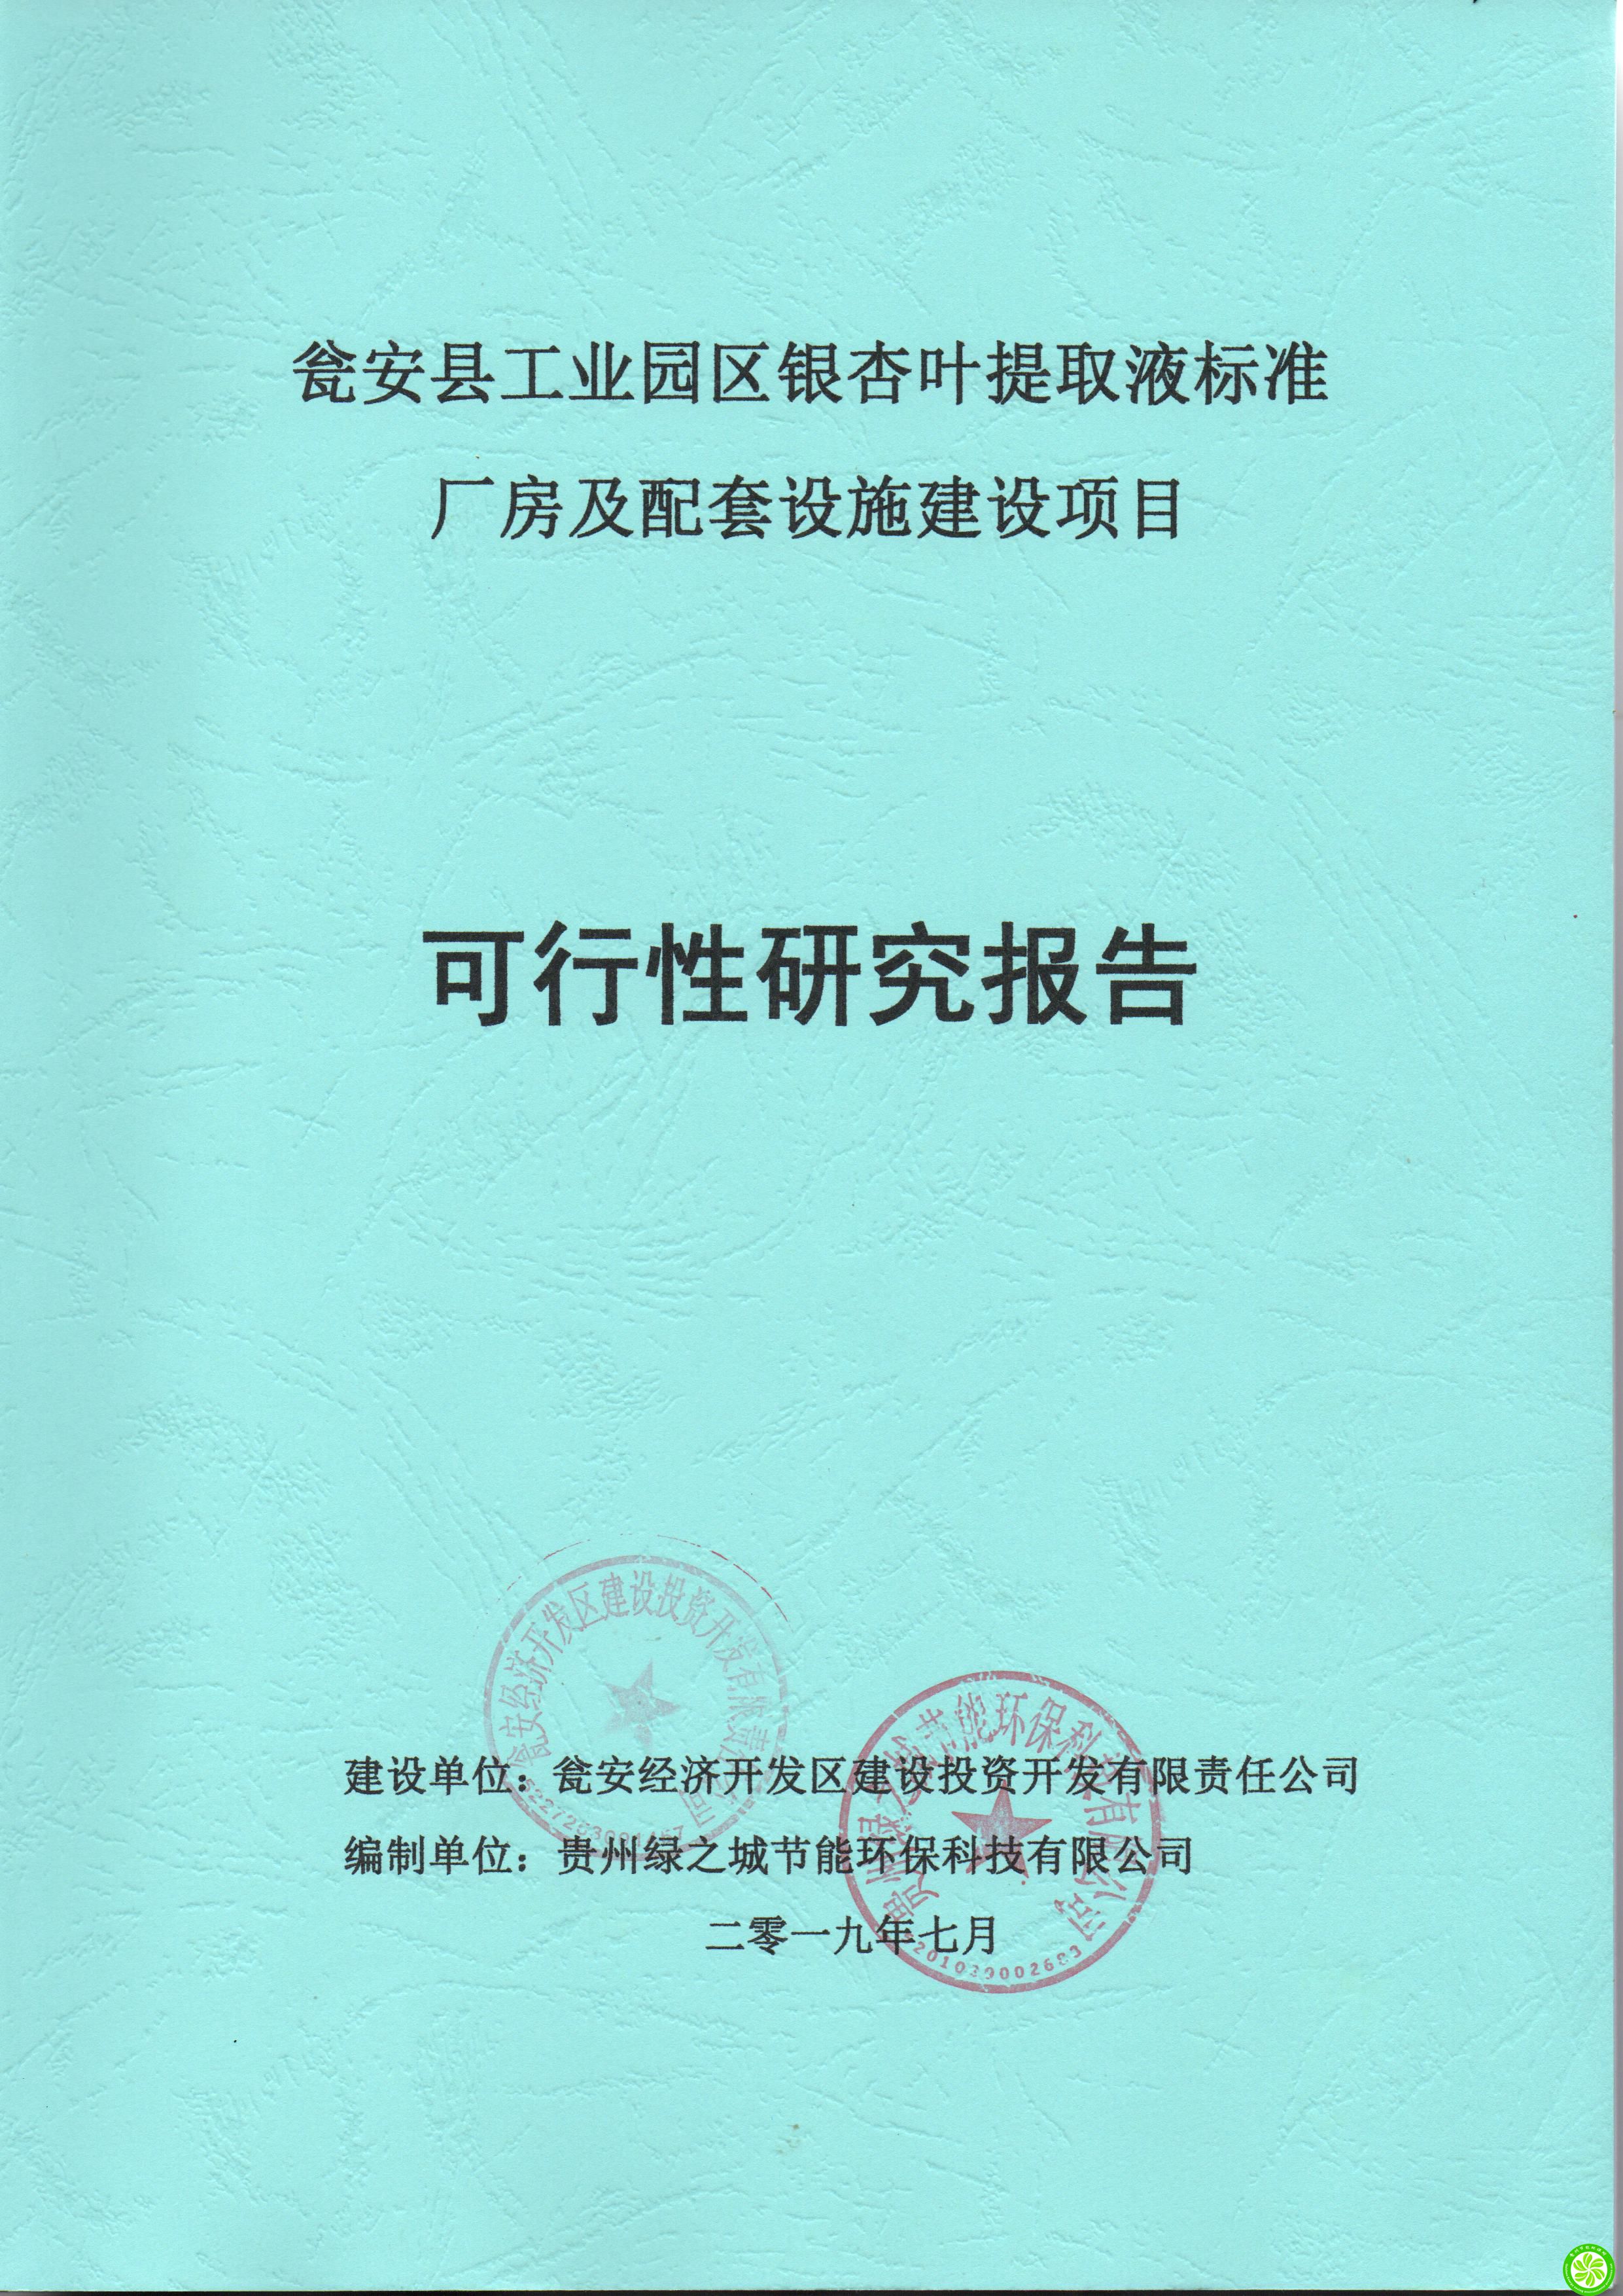 贵州可行性研究报告编制及评审公司